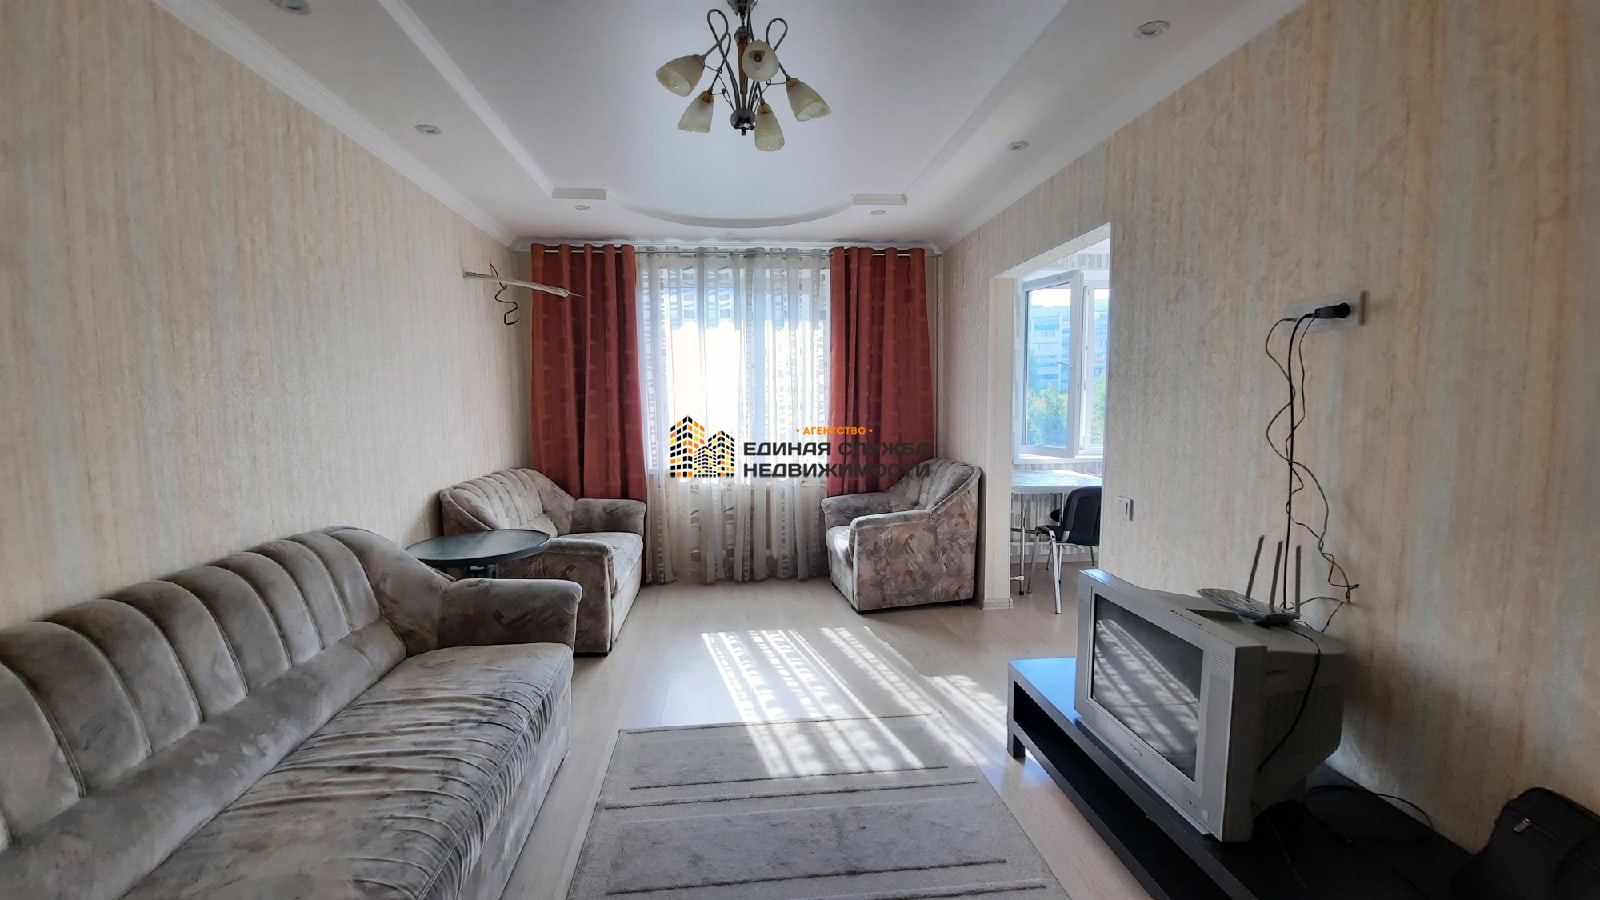 Сдается квартира в Орджоникидзевском районе.